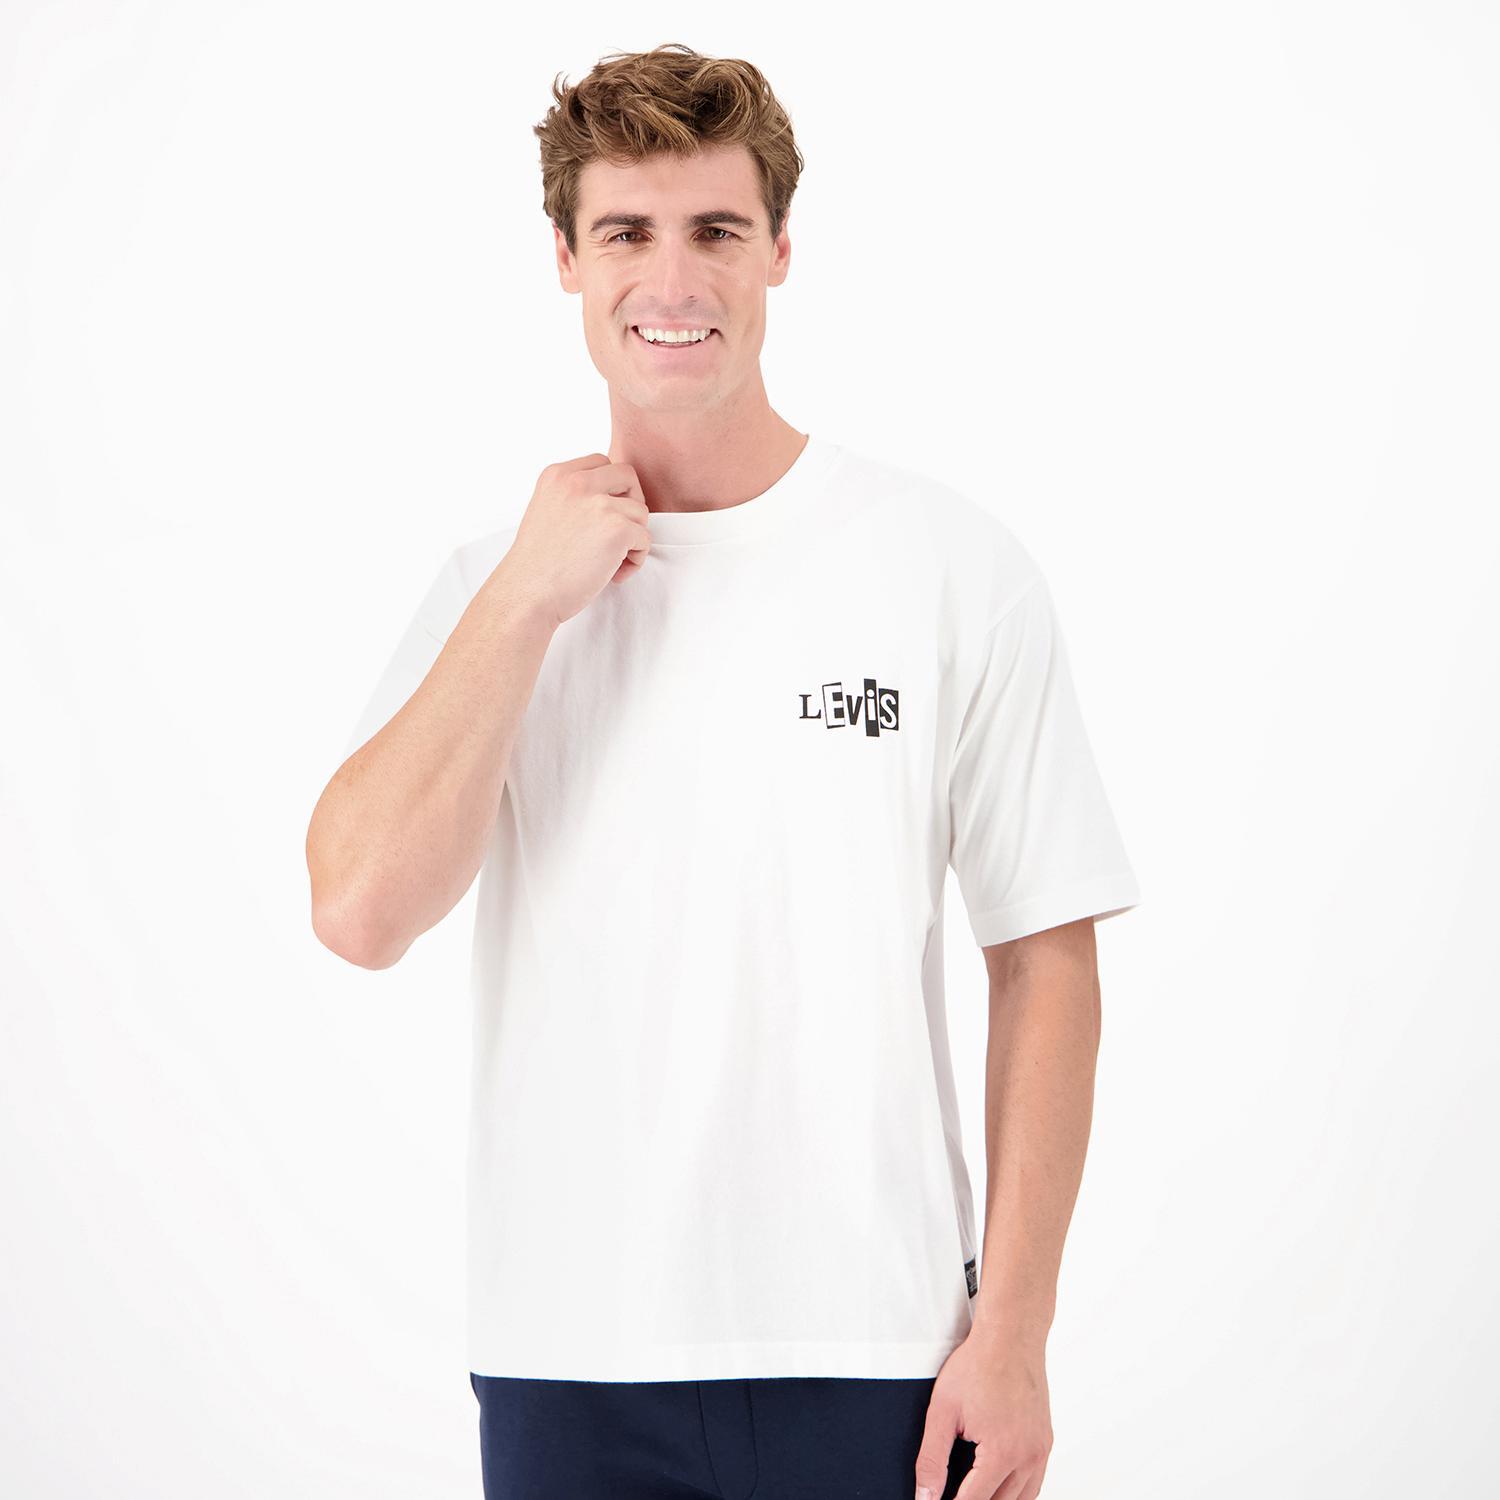 Levi's Skate - Branco - T-shirt Homem tamanho L product